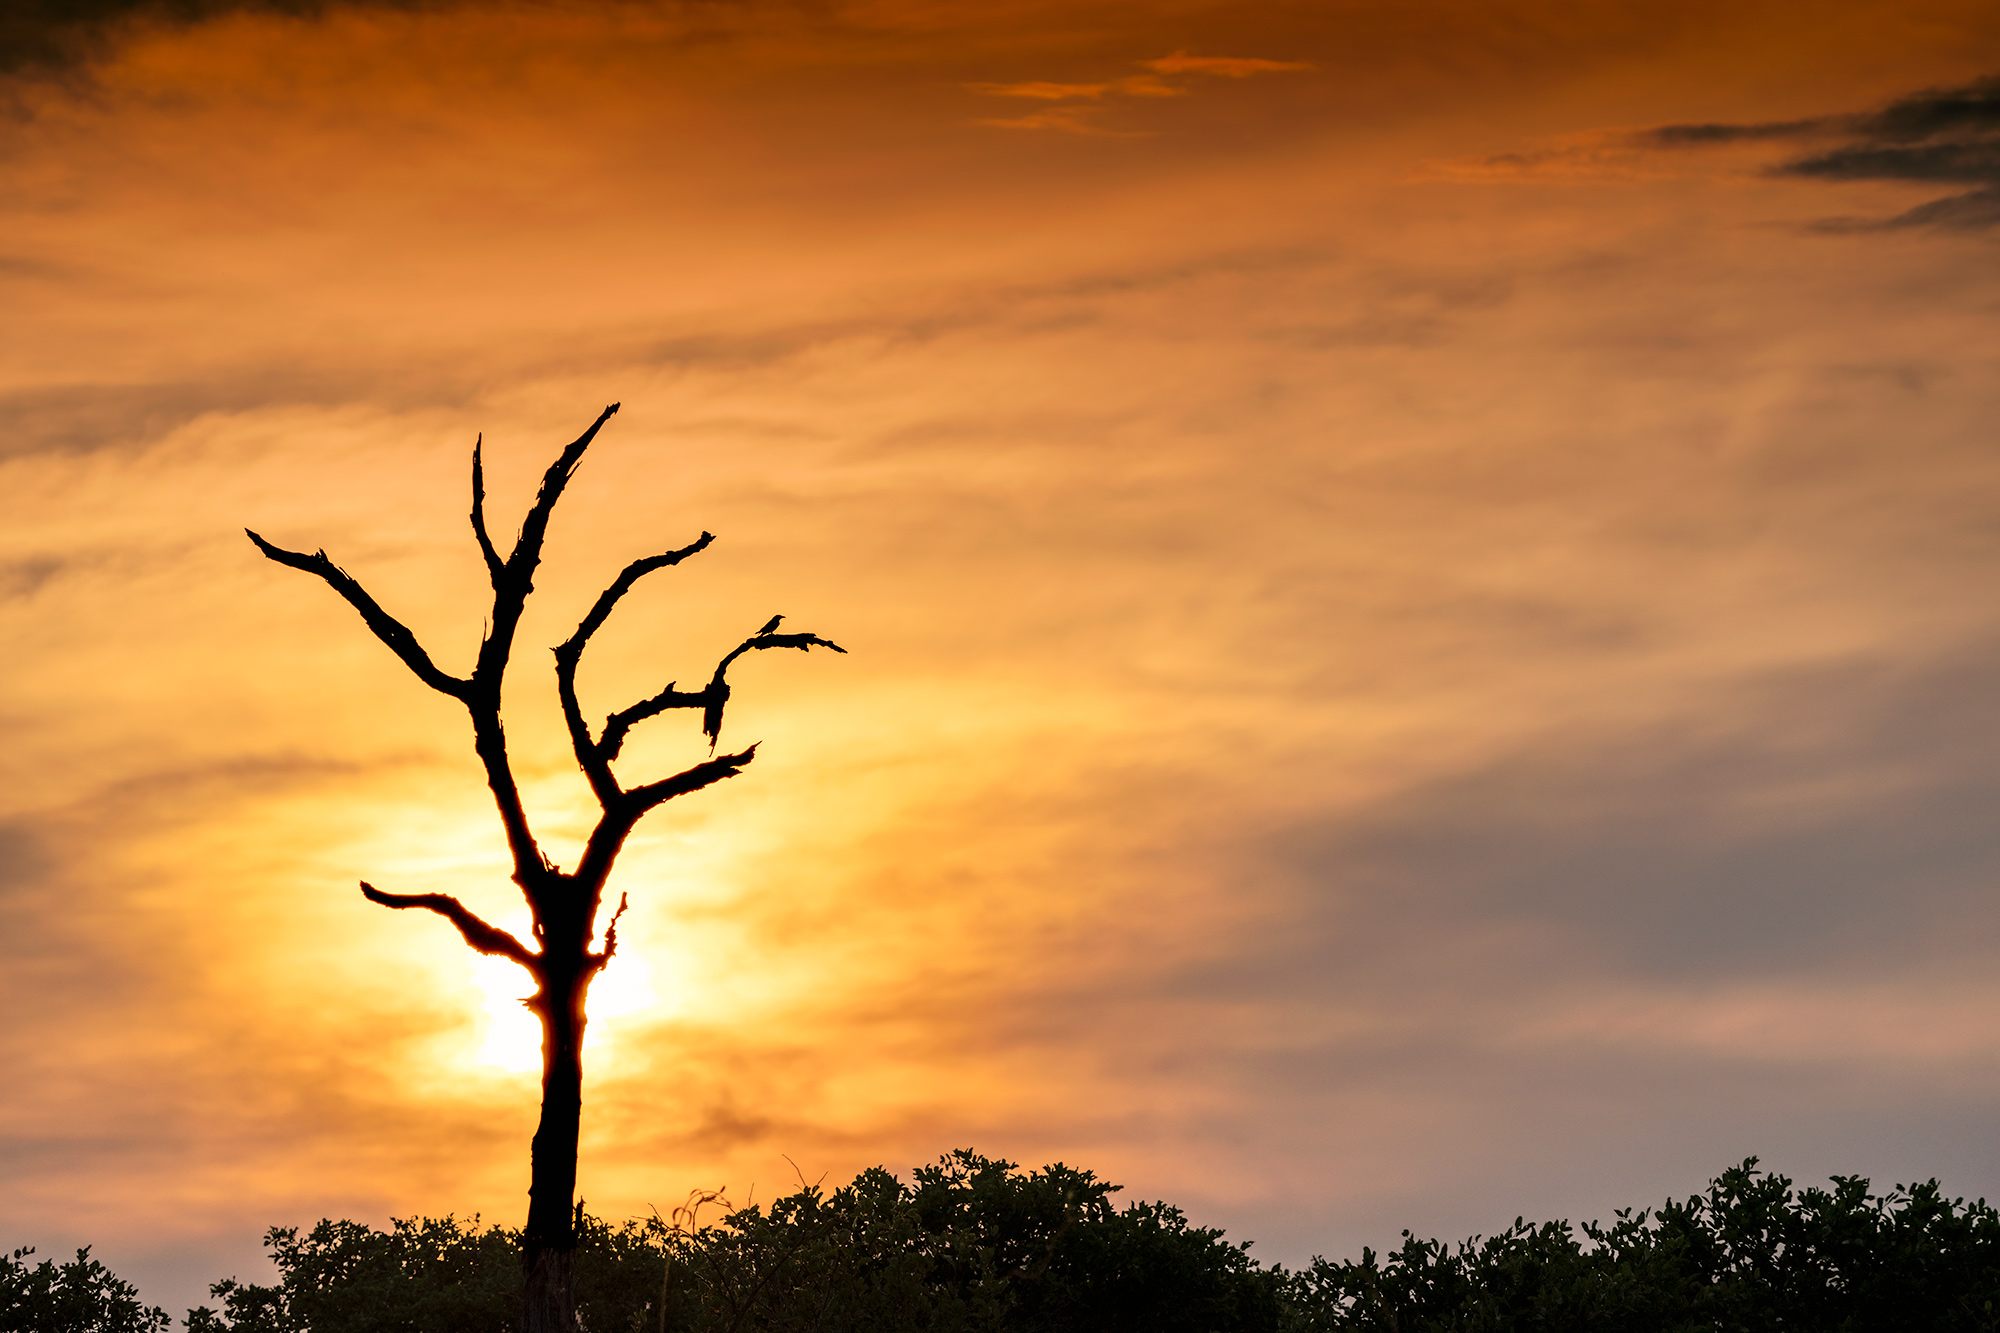 Sonnenuntergang und Baum auf einer Fotoreise mit Benny Rebel Fotosafaris fotografiert.